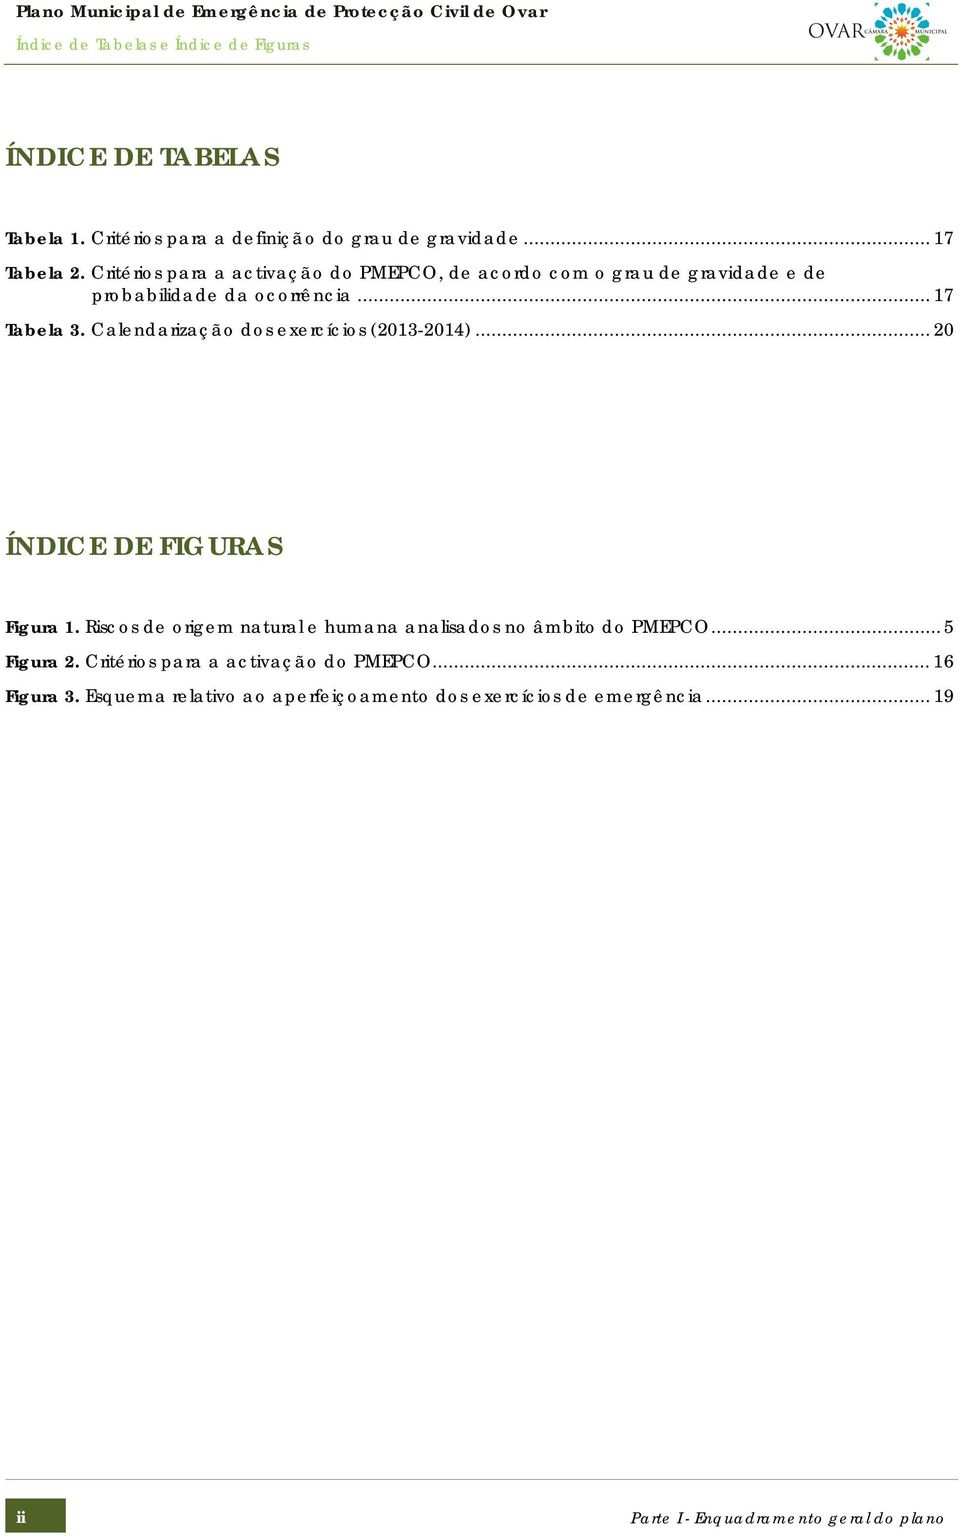 Calendarização dos exercícios (2013-2014)... 20 ÍNDICE DE FIGURAS Figura 1. Riscos de origem natural e humana analisados no âmbito do PMEPCO.